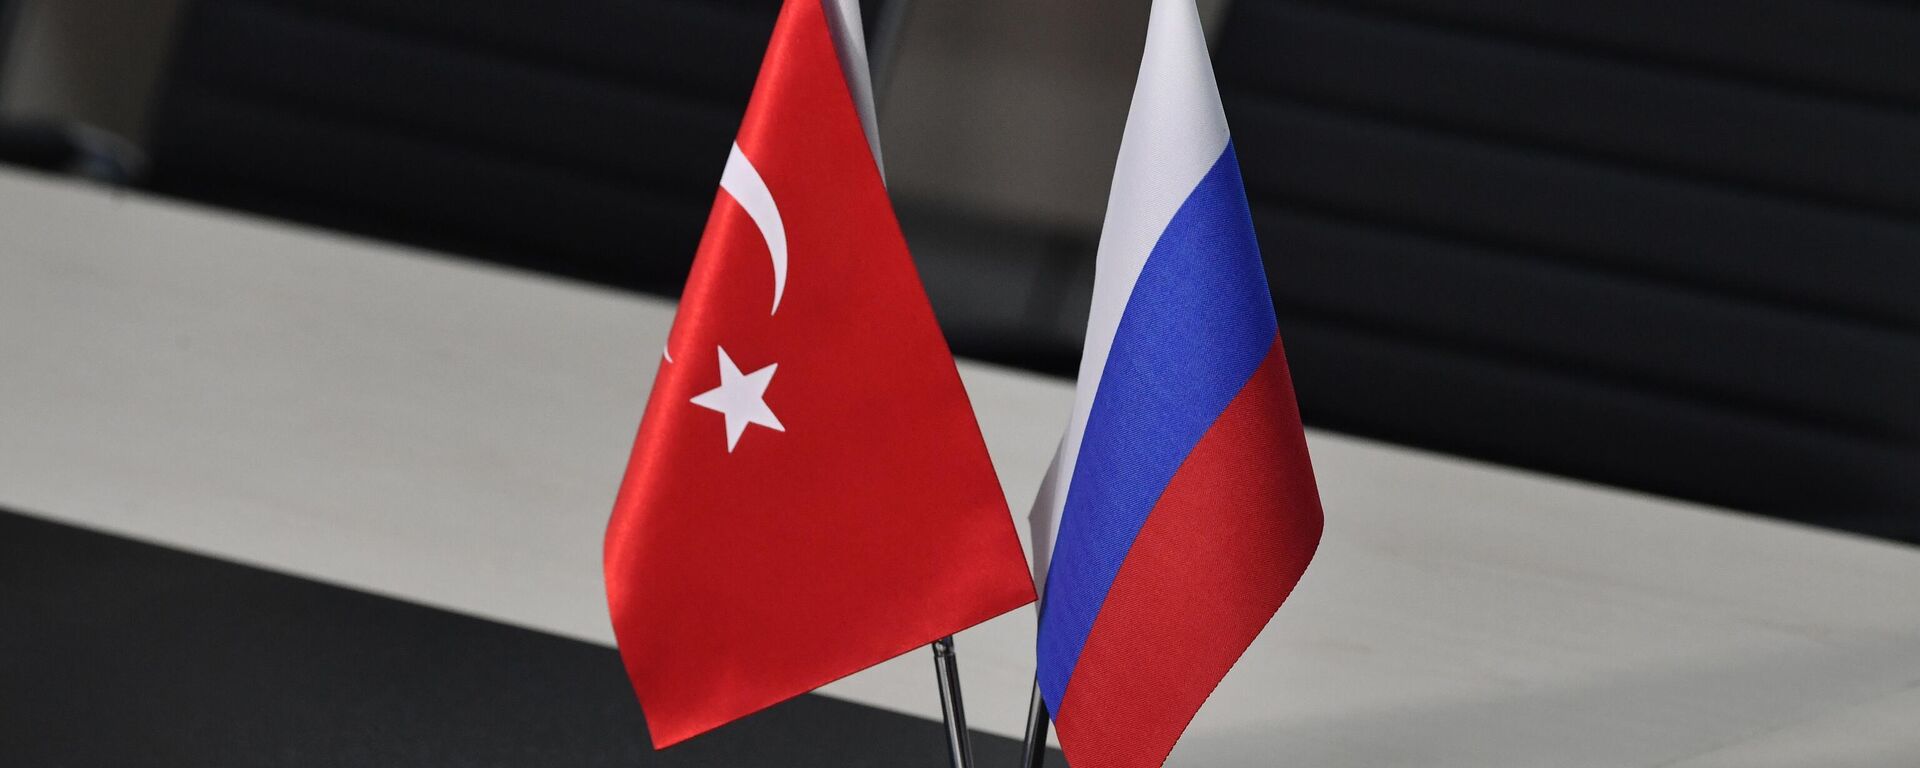 Banderas de Turquía y Rusia - Sputnik Mundo, 1920, 19.03.2022